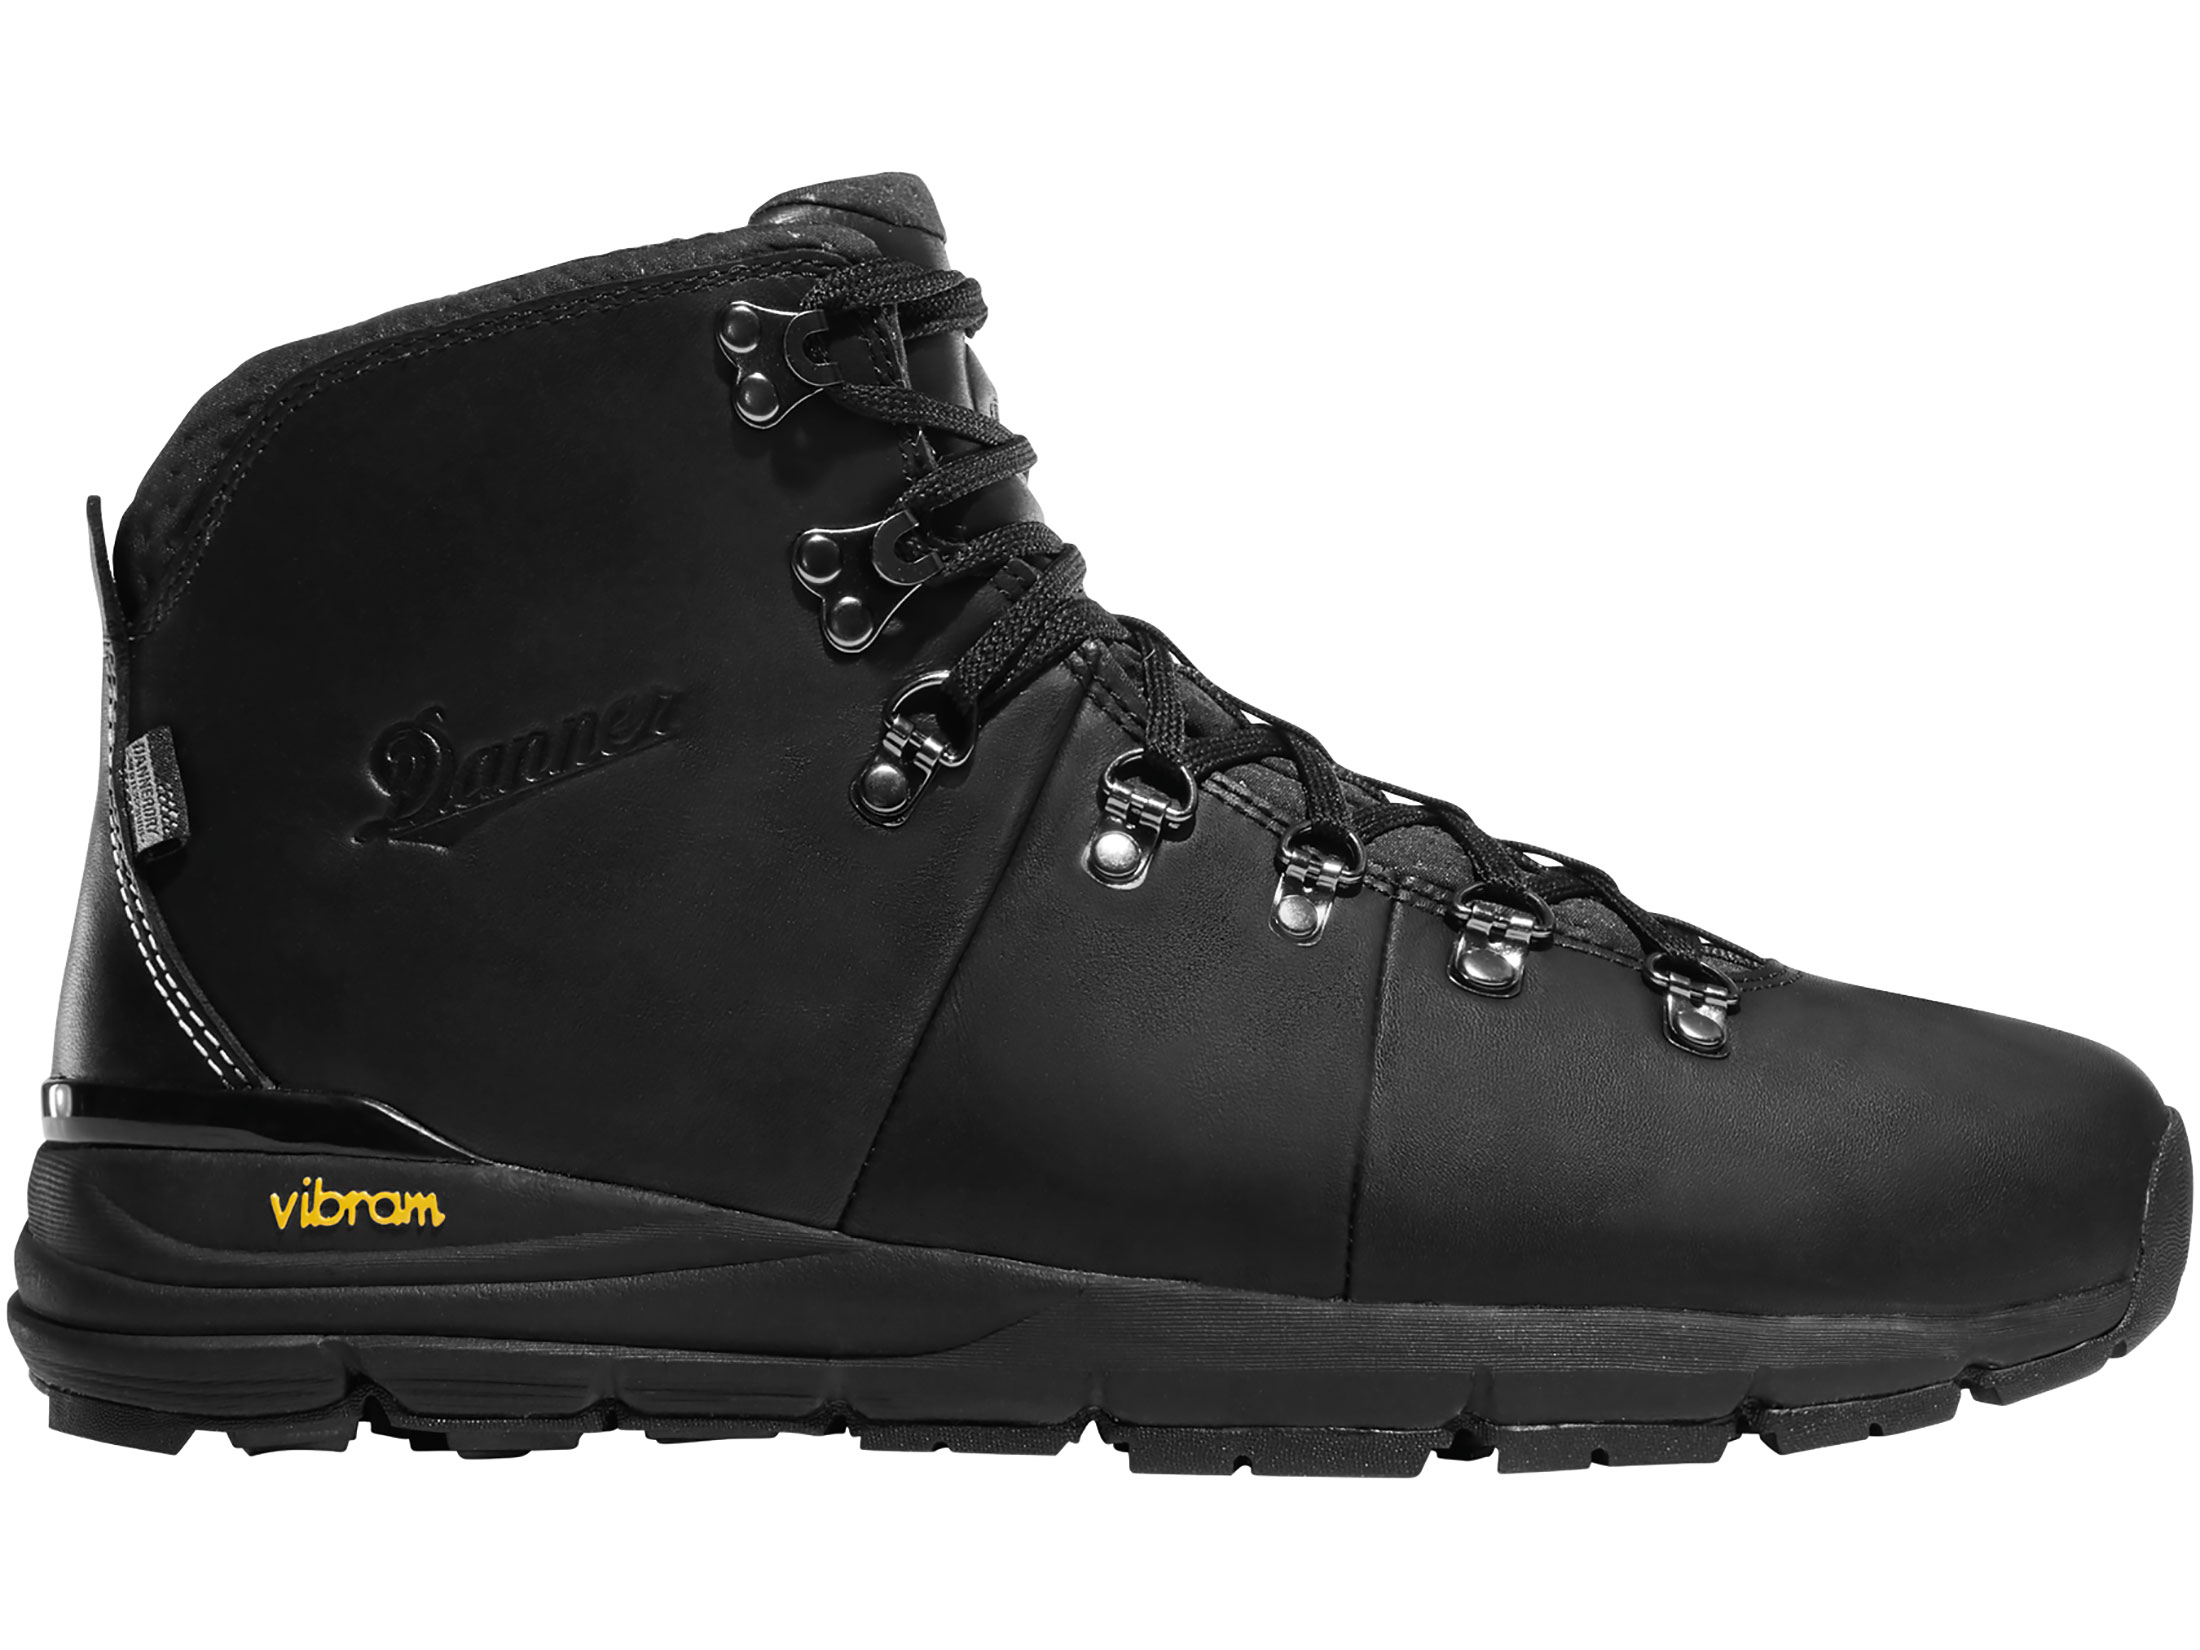 Danner Mountain 600 4.5 Hiking Boots Full Grain Leather Black Men's